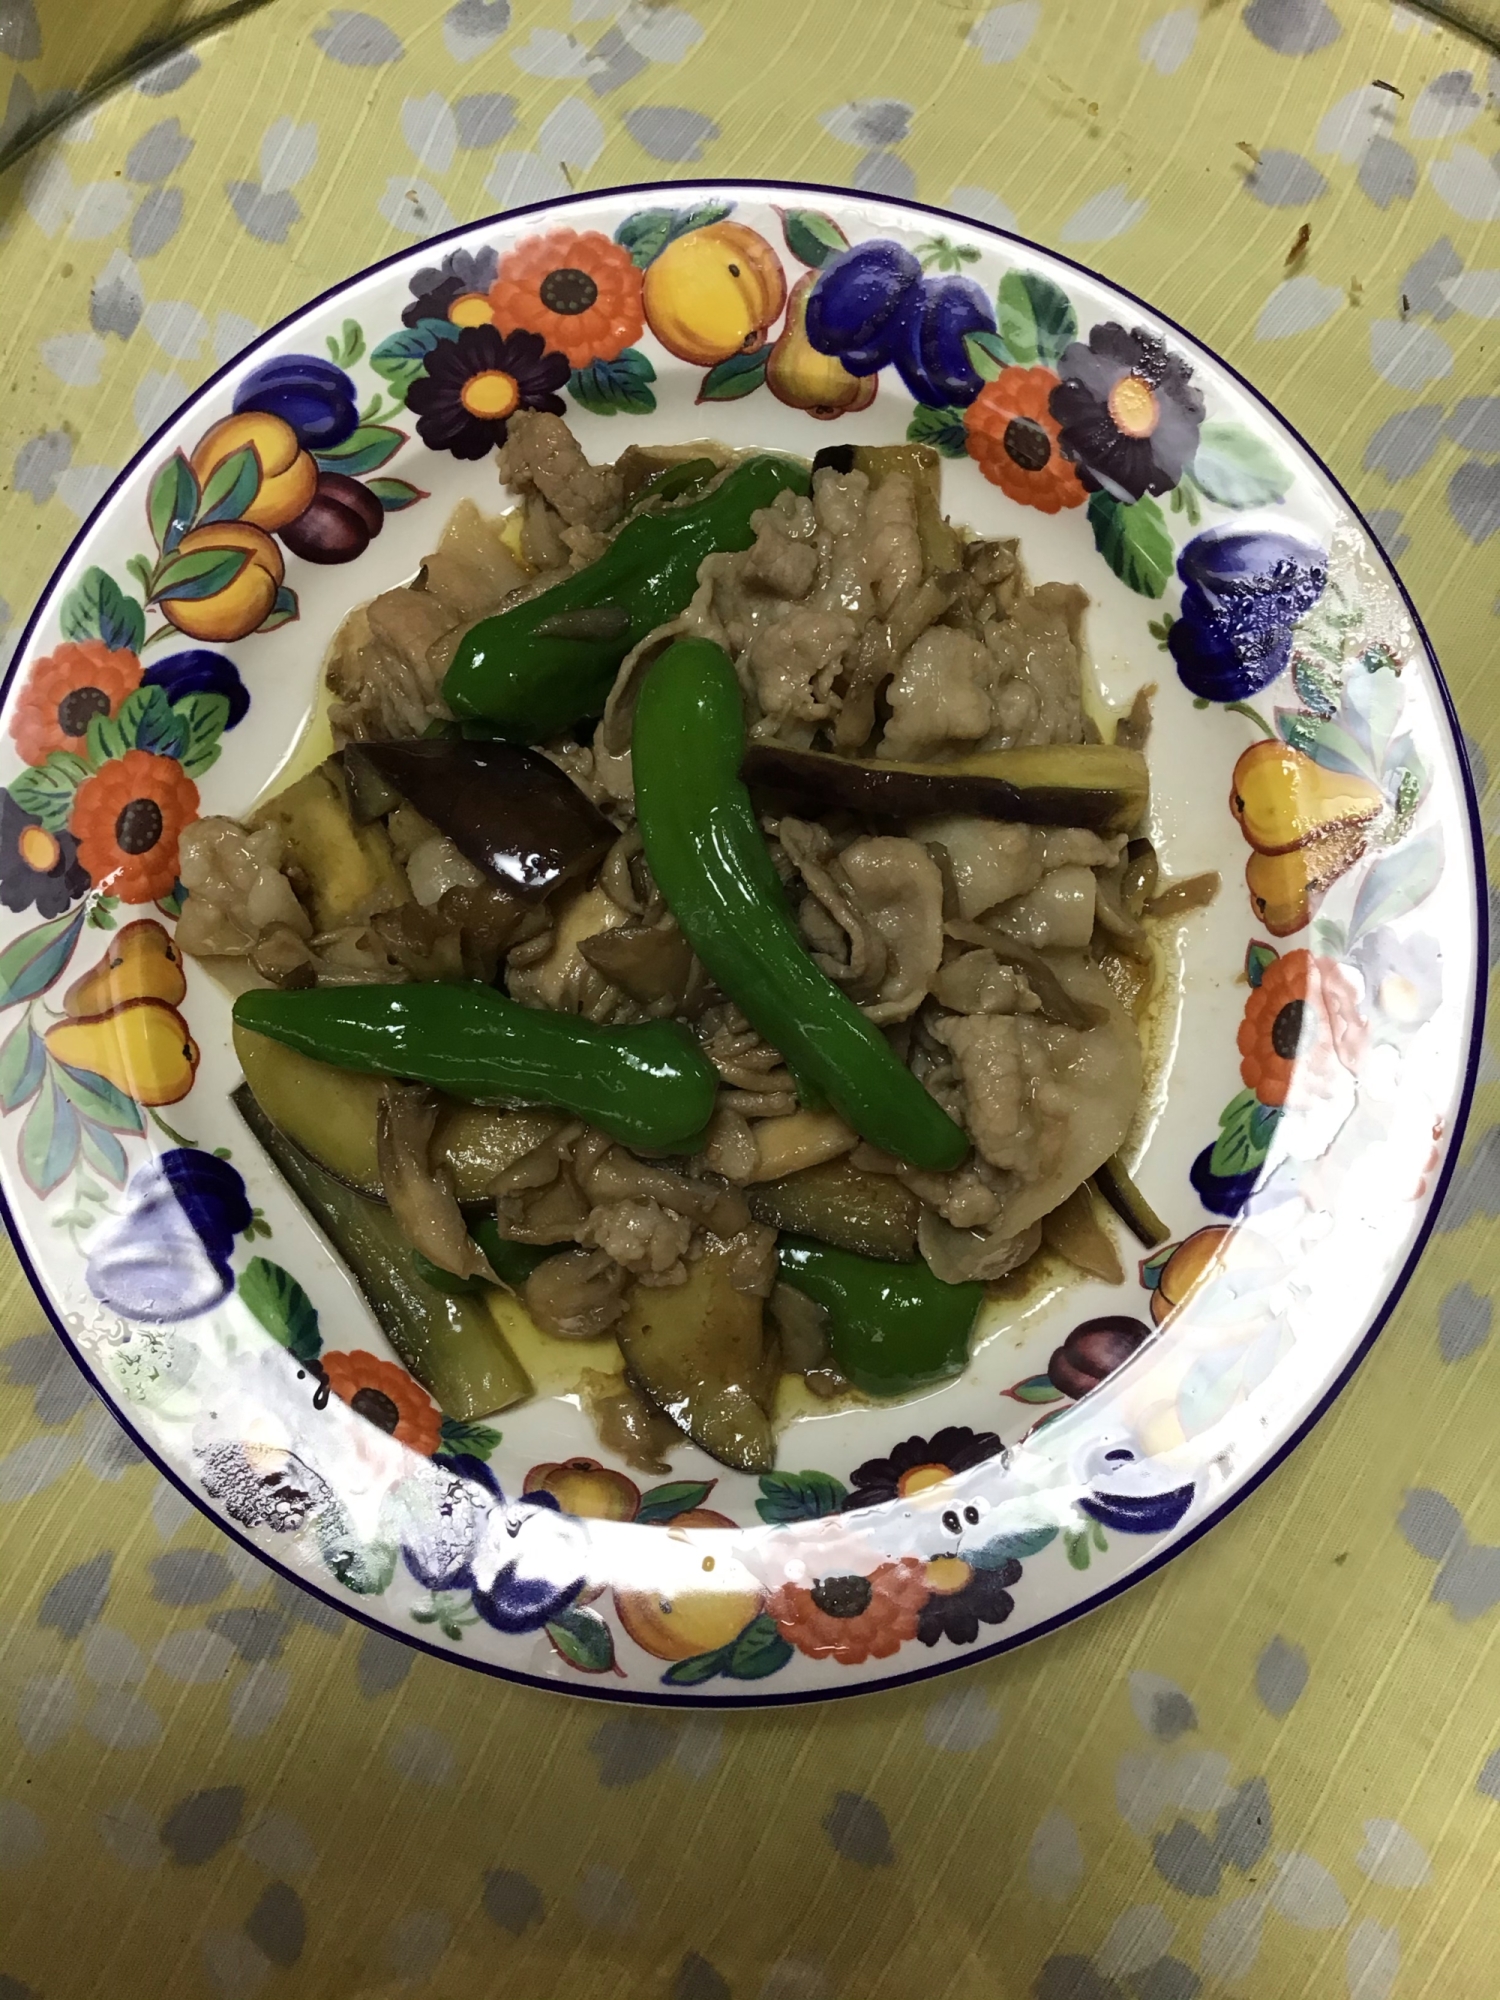 豚バラ肉と舞茸に茄子とししとうを加えた中華風炒め物